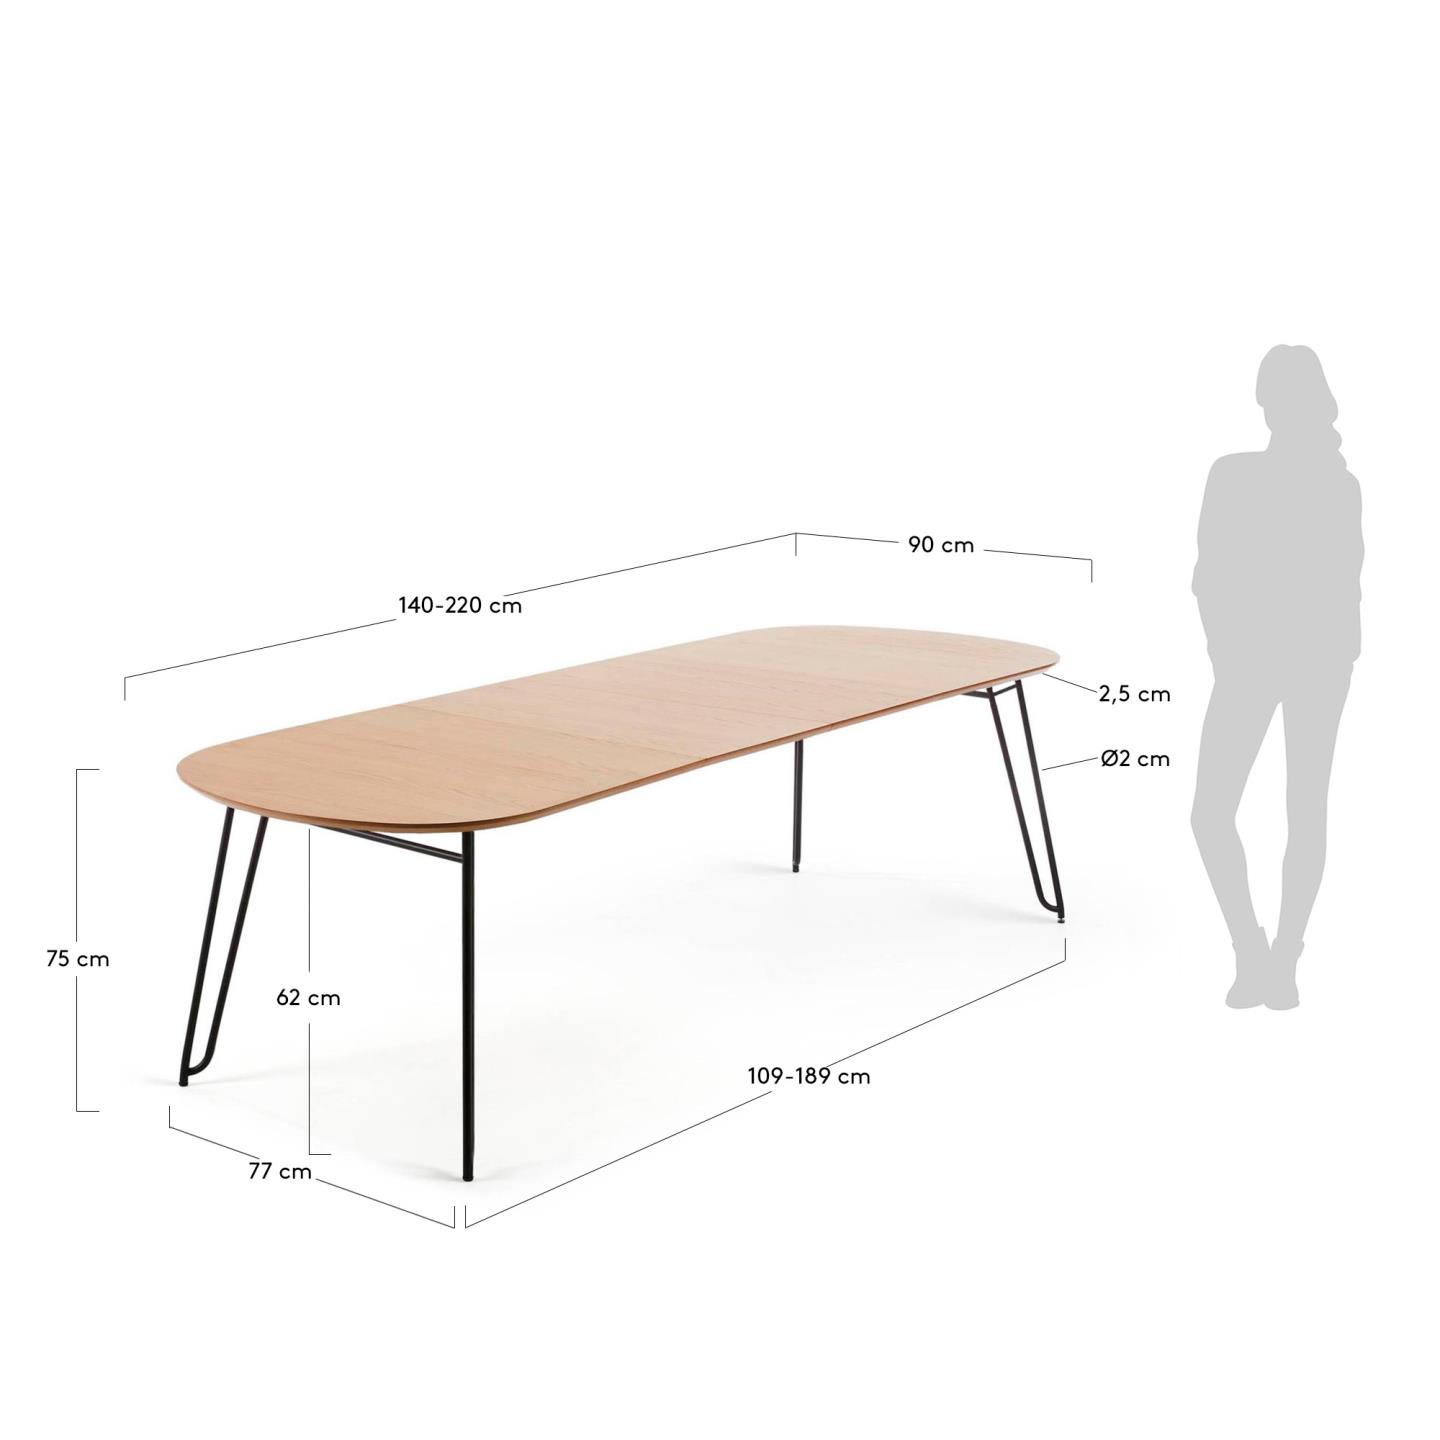 노바 오크 라운드 확장형 테이블 (타원형 /90x140-220cm) - 크기